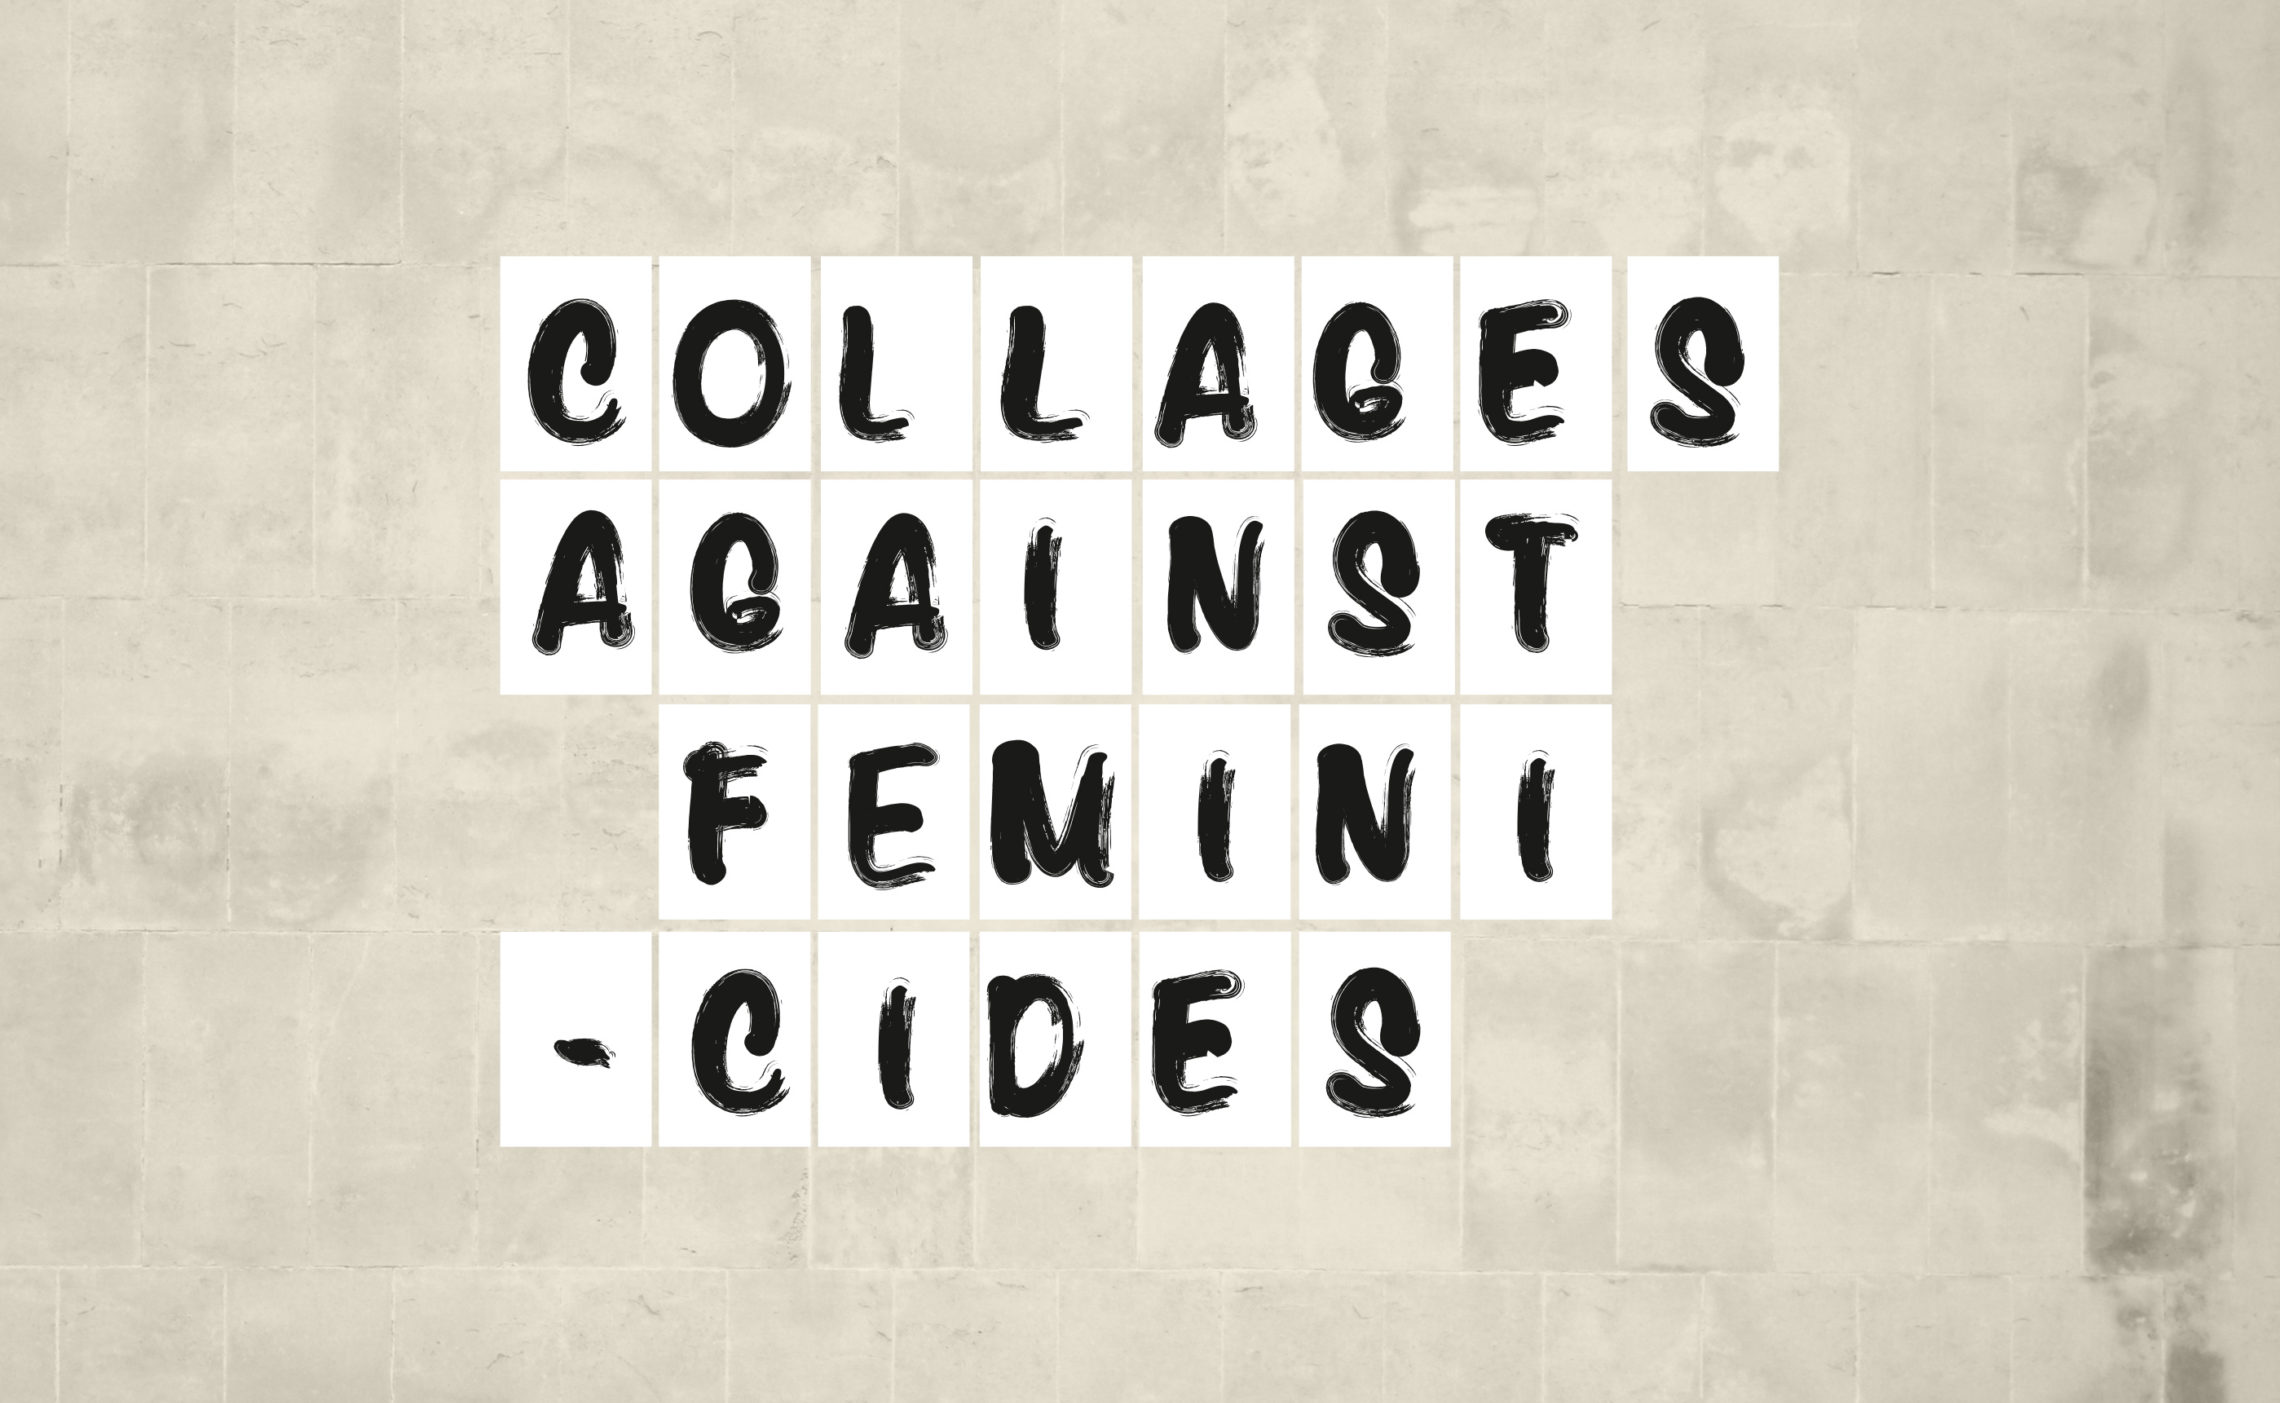 collages against feminicides